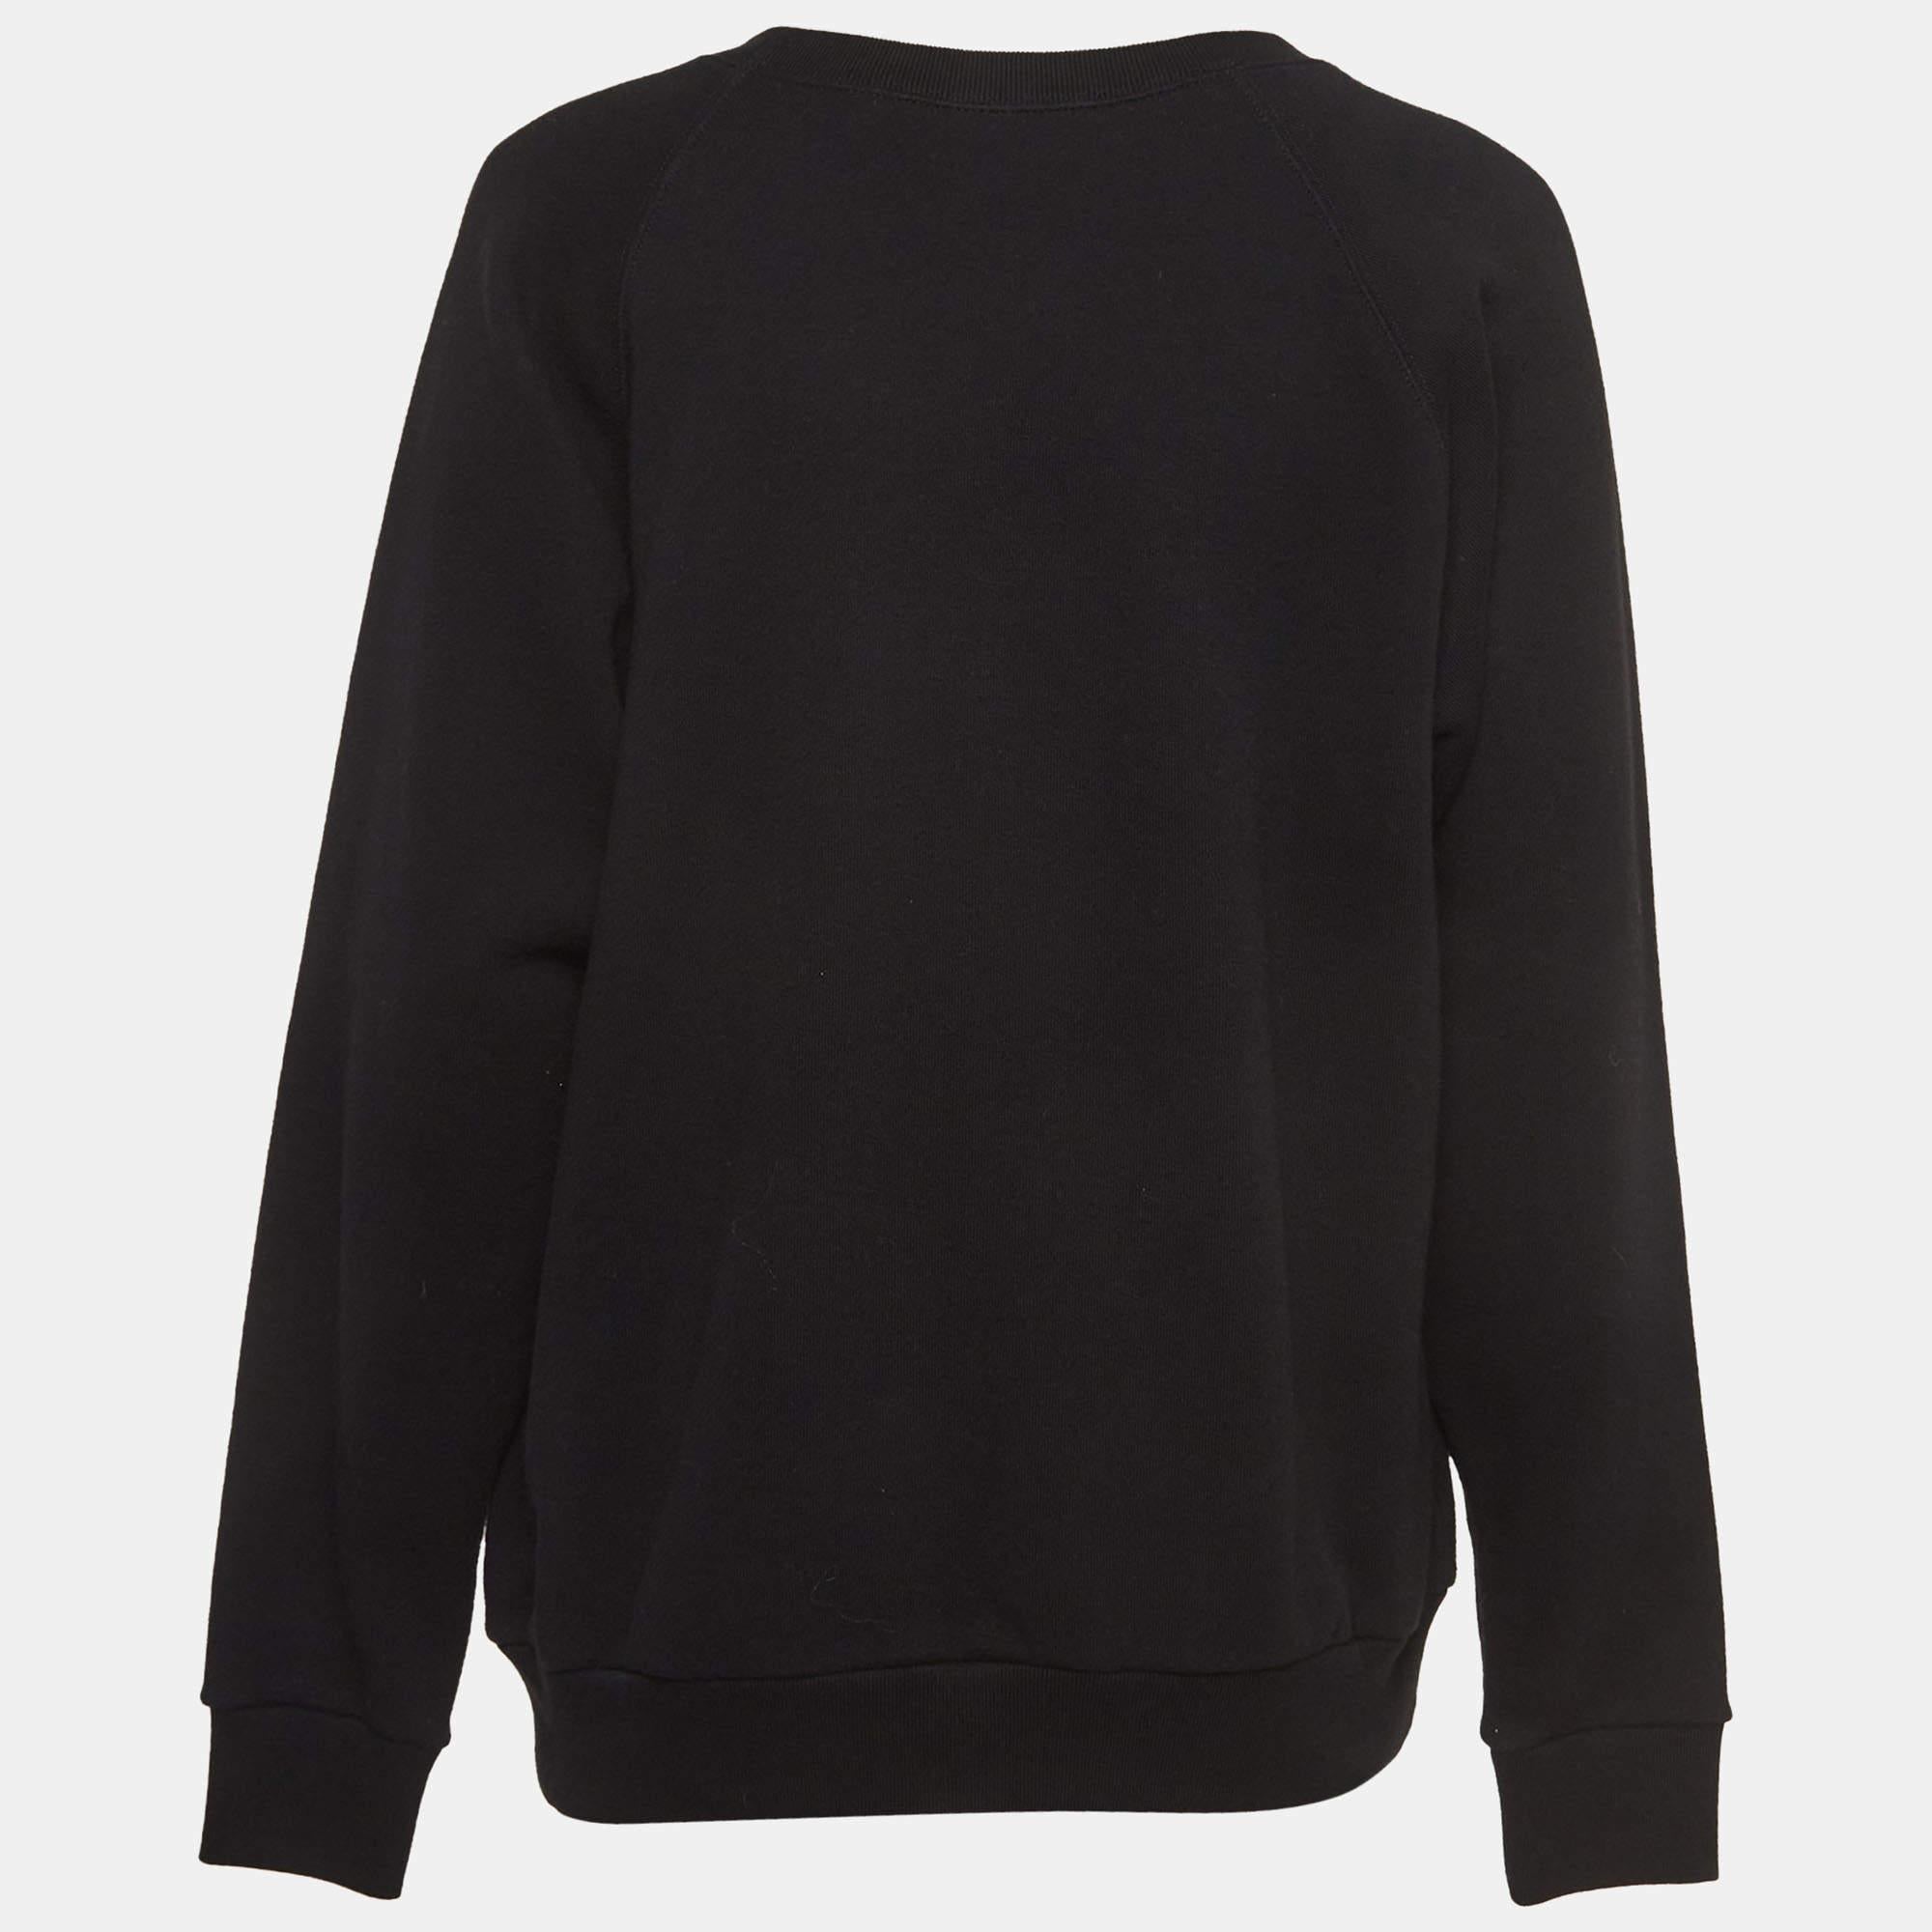 Mit diesem schicken Sweatshirt von Gucci erleben Sie Komfort und Stil ohne Ende. Dieses Sweatshirt wurde aus einem hochwertigen Stoff gefertigt, der für ein angenehmes Tragegefühl sorgt.

